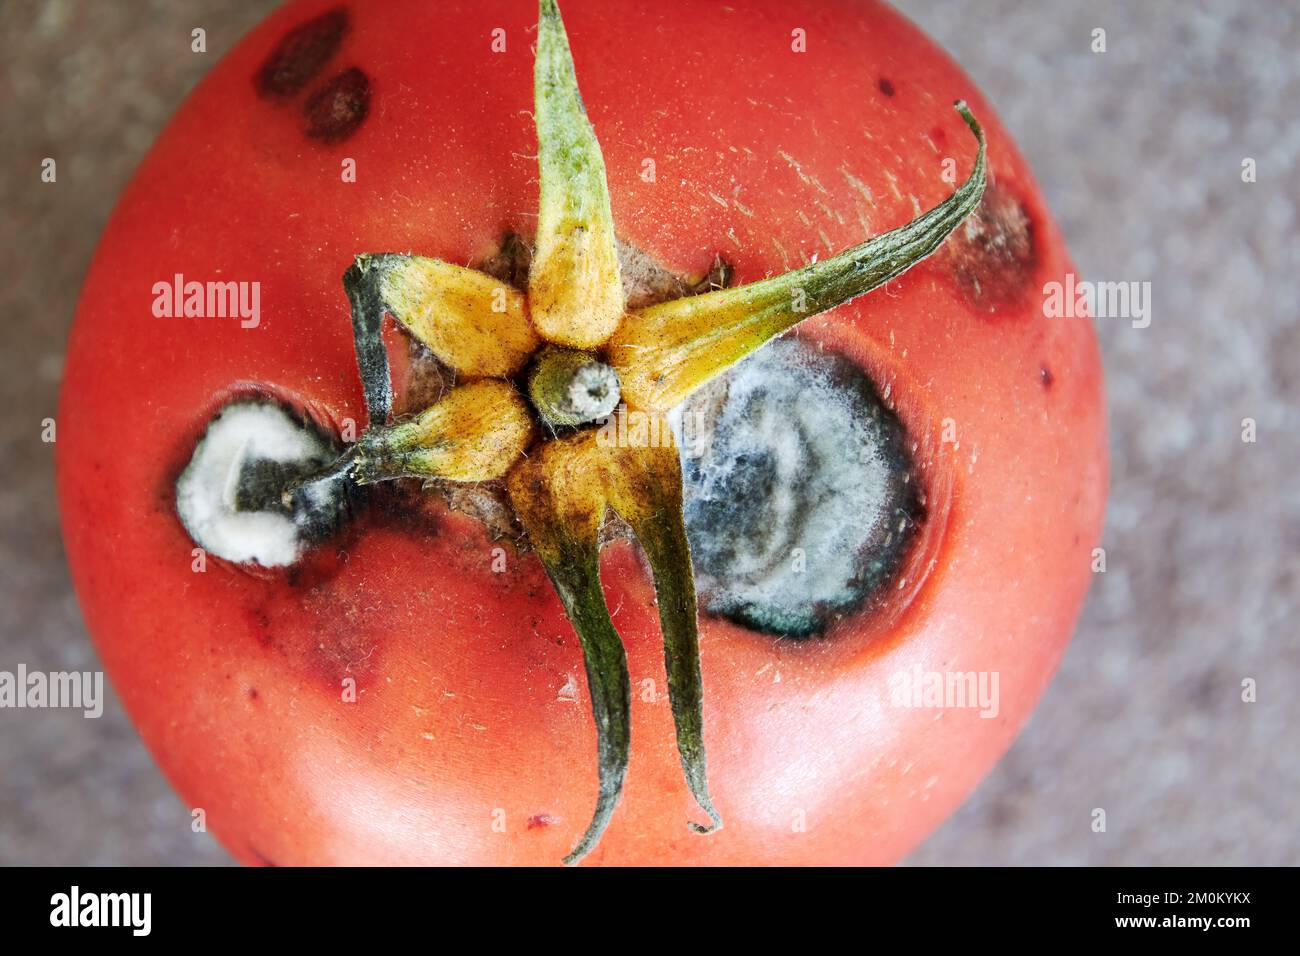 Vista superior de tomate rojo podrido con moho blanco brillante. Alimentos y verduras malsanos y malsanos Foto de stock